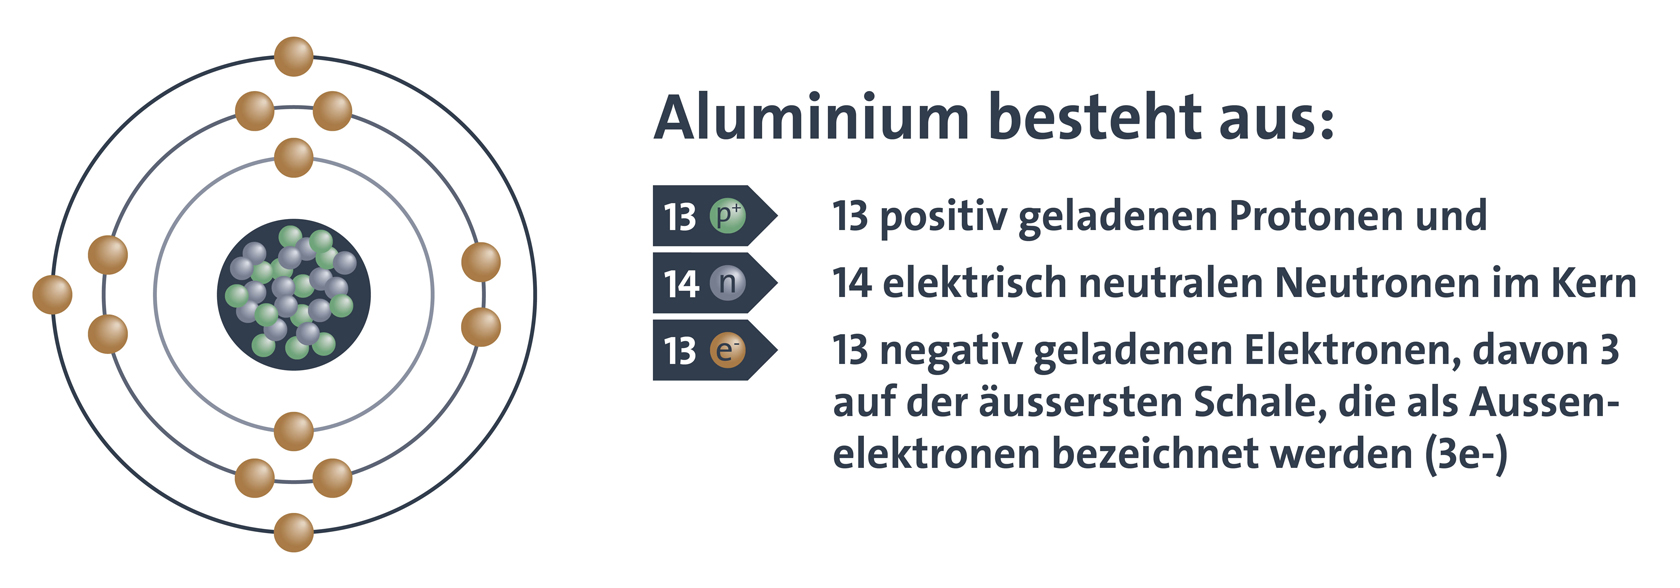 Aluminium besteht aus: 13 positiv geladenen Protonen und 14 elektrisch neutralen Neutronen im Kern und 13 negativ geladenen Elektronen, davon 3 auf der äussersten Schale, die als Aussenelektronen bezeichnet werden (3e-)